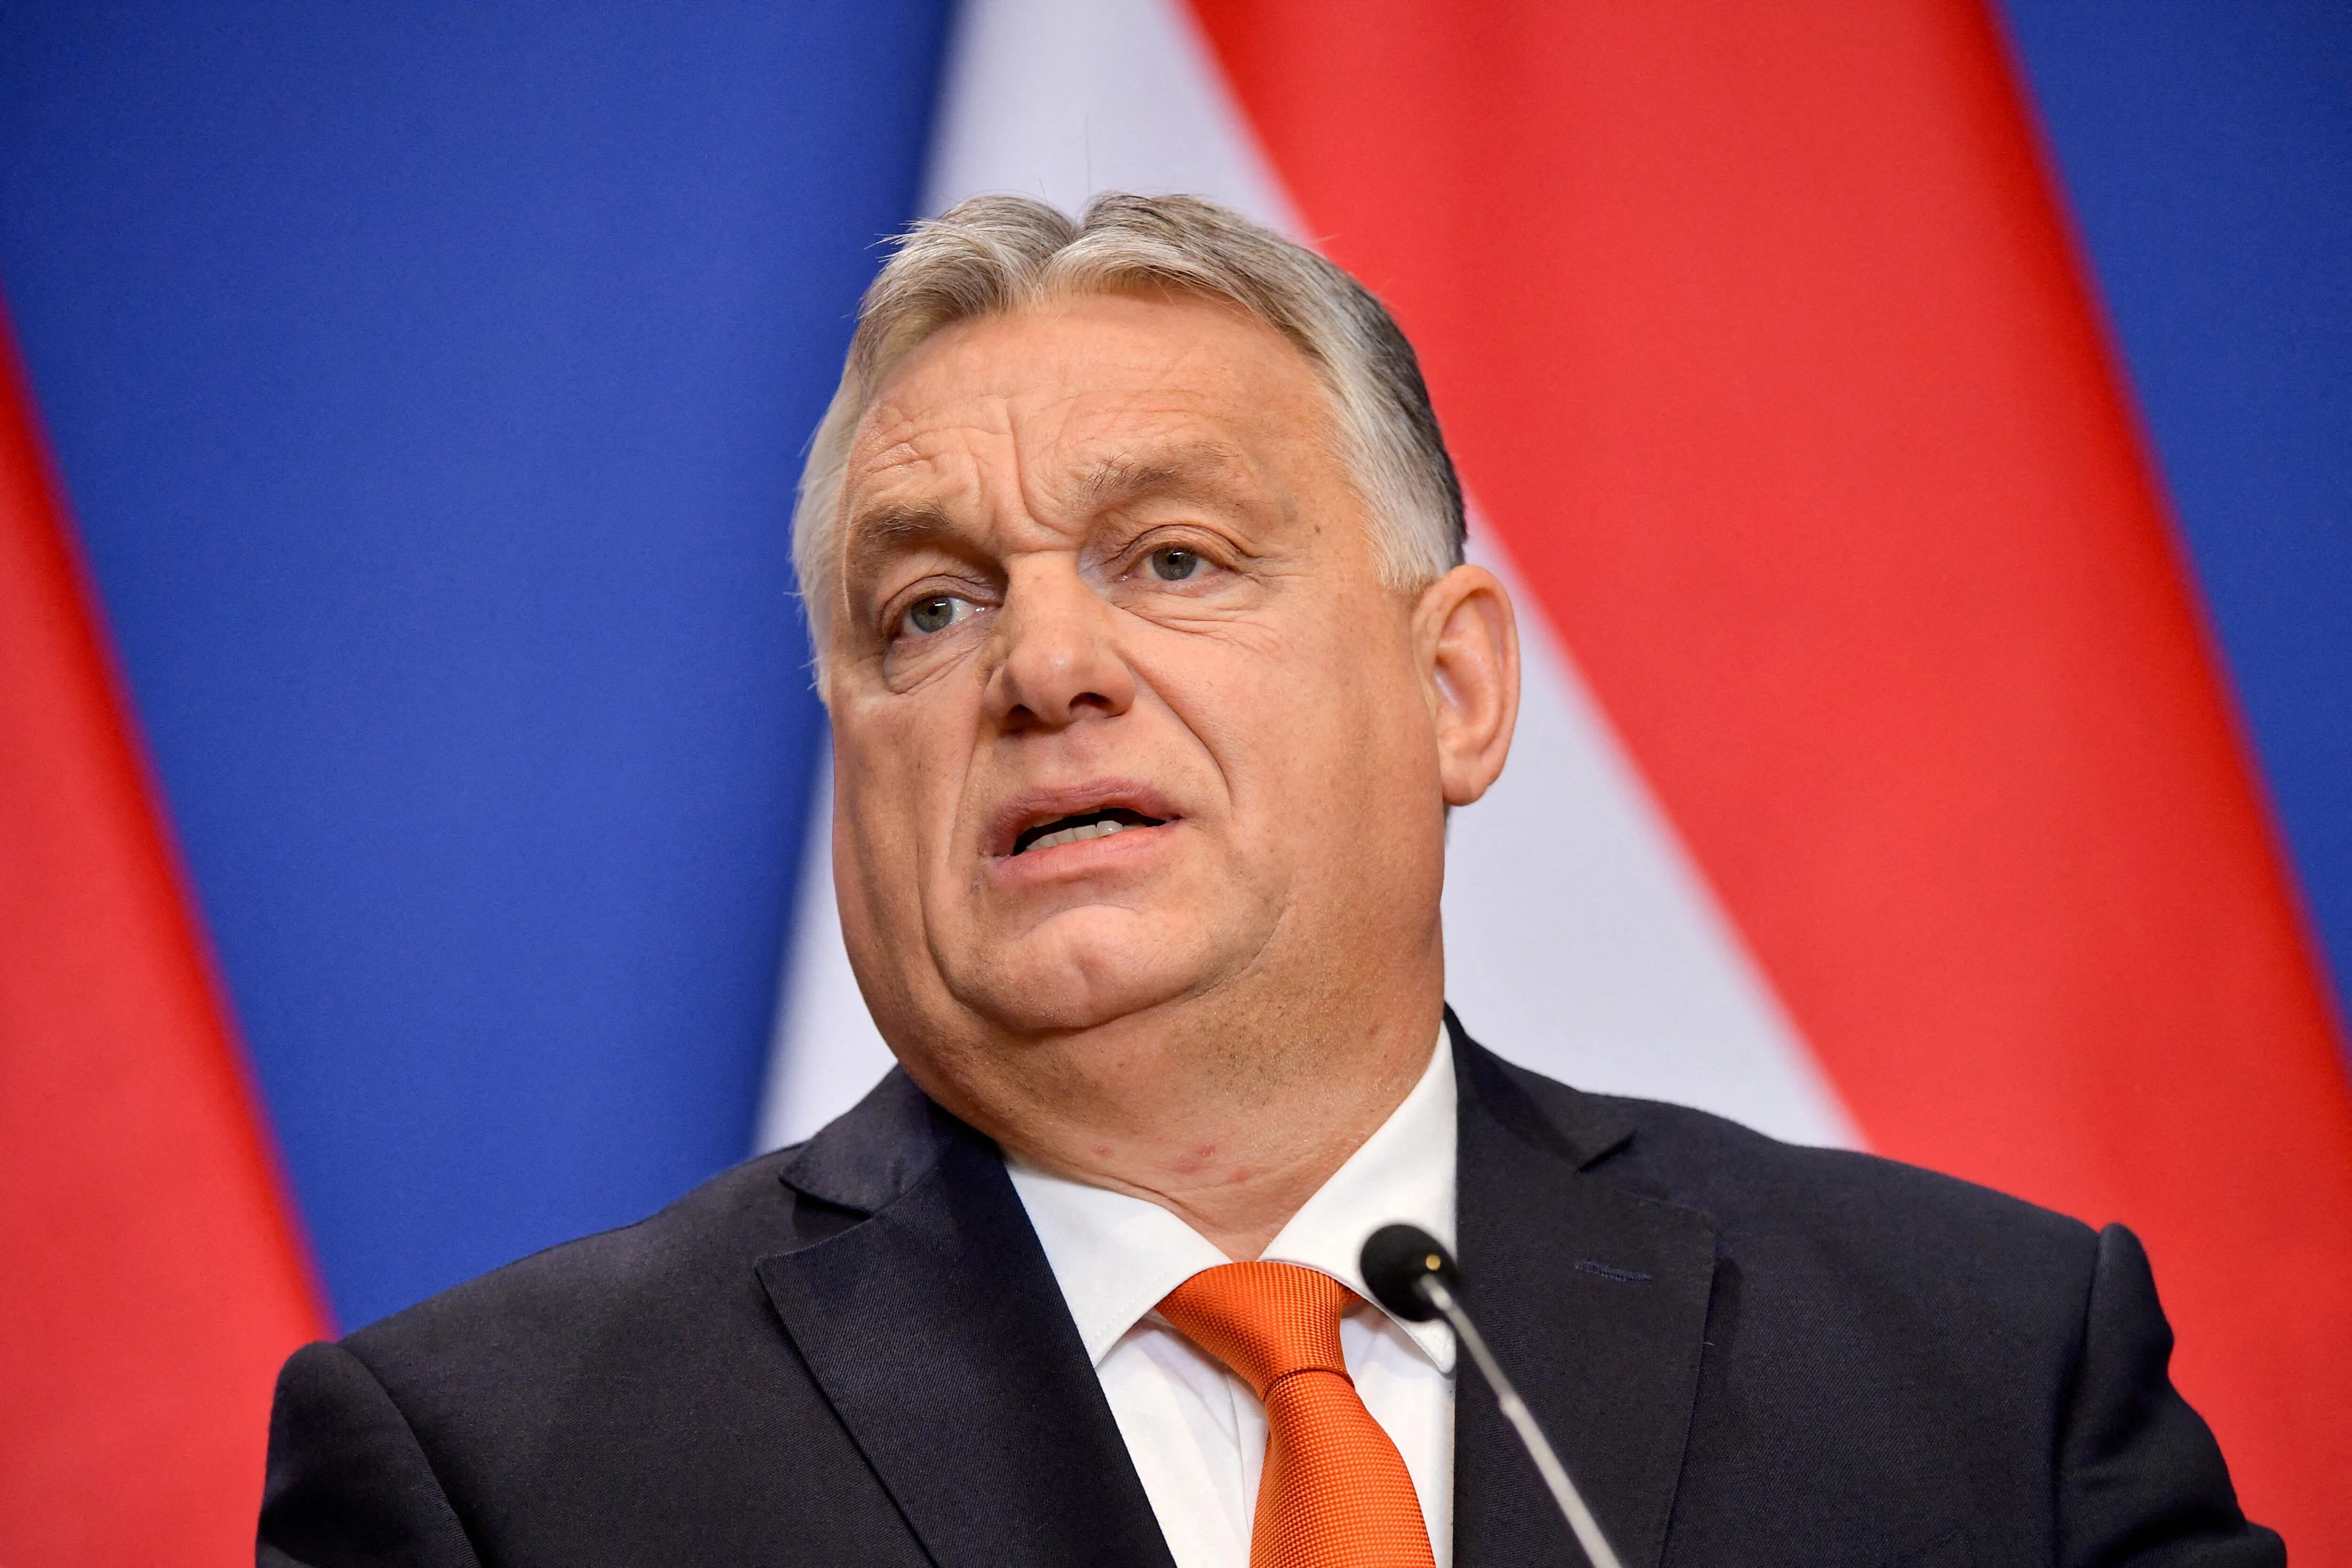 Tensión entre Hungría y Ucrania: Orban bloqueará los fondos para armar a Kiev si Zelensky mantiene las sanciones a su mayor banco